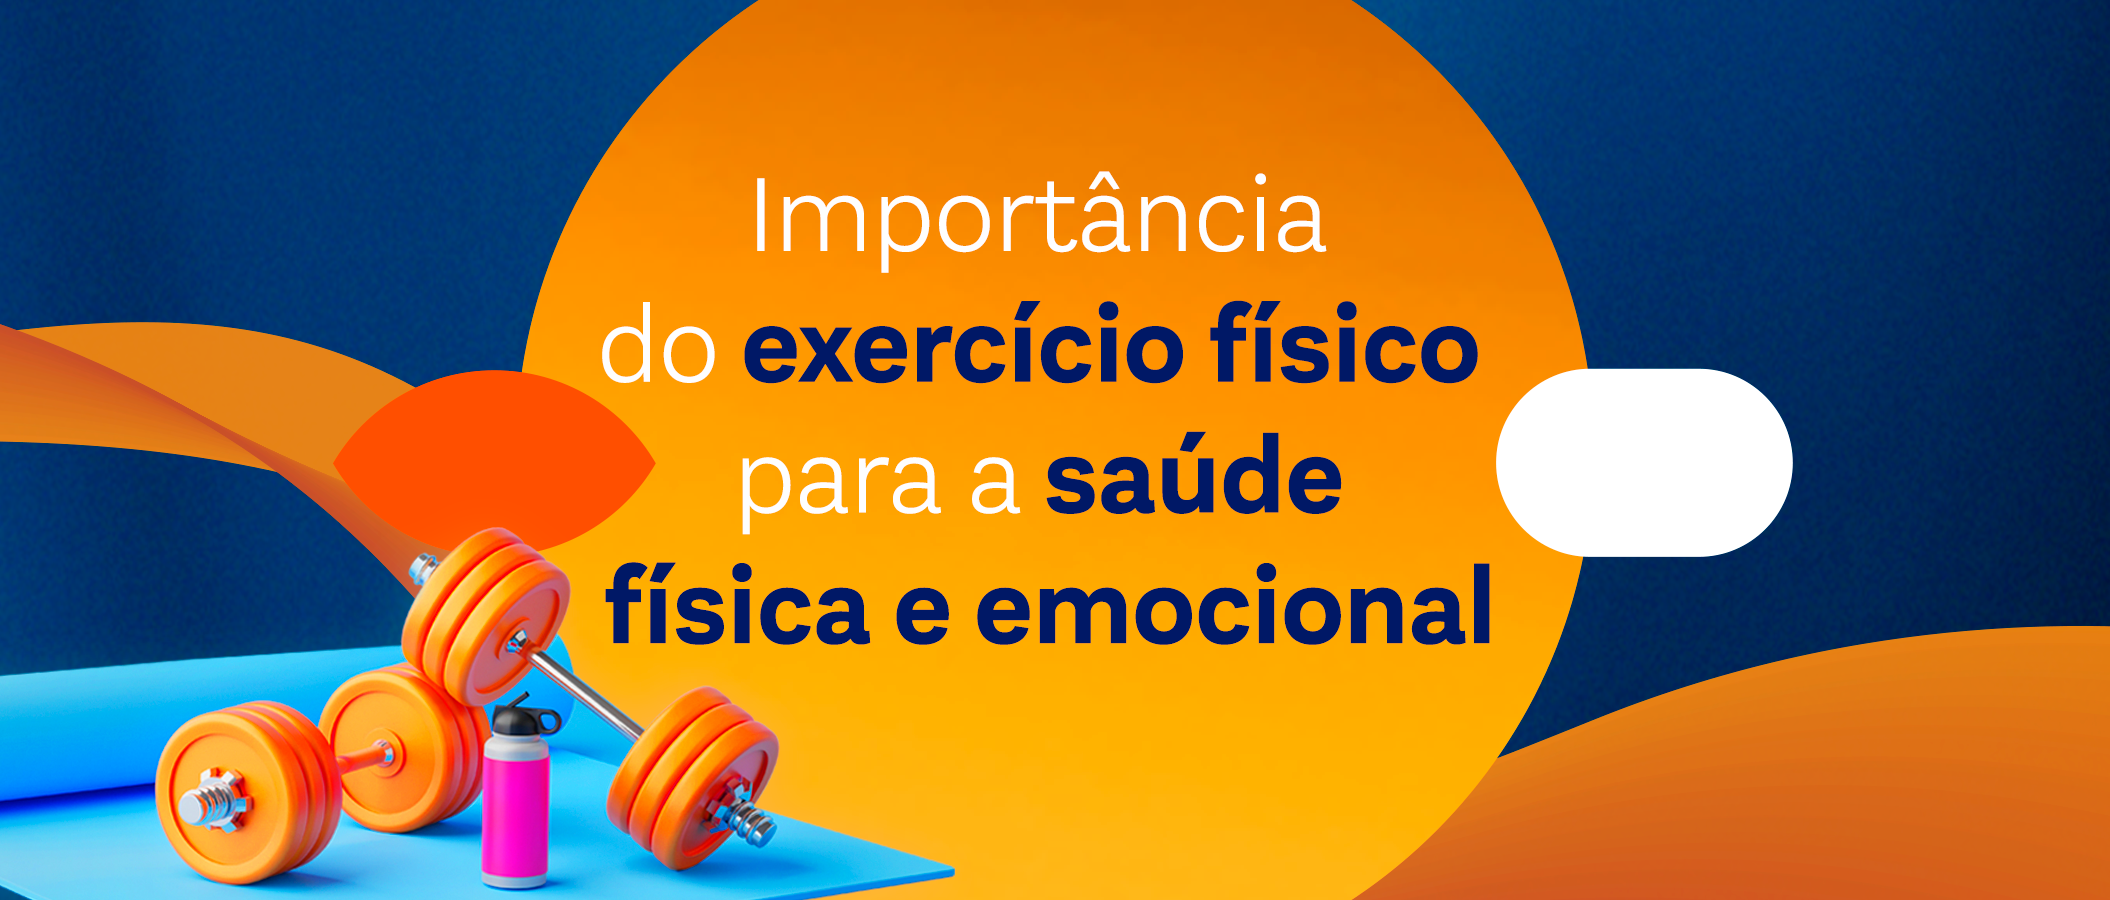 Importância dos exercício físicos para a saúde física e emocional